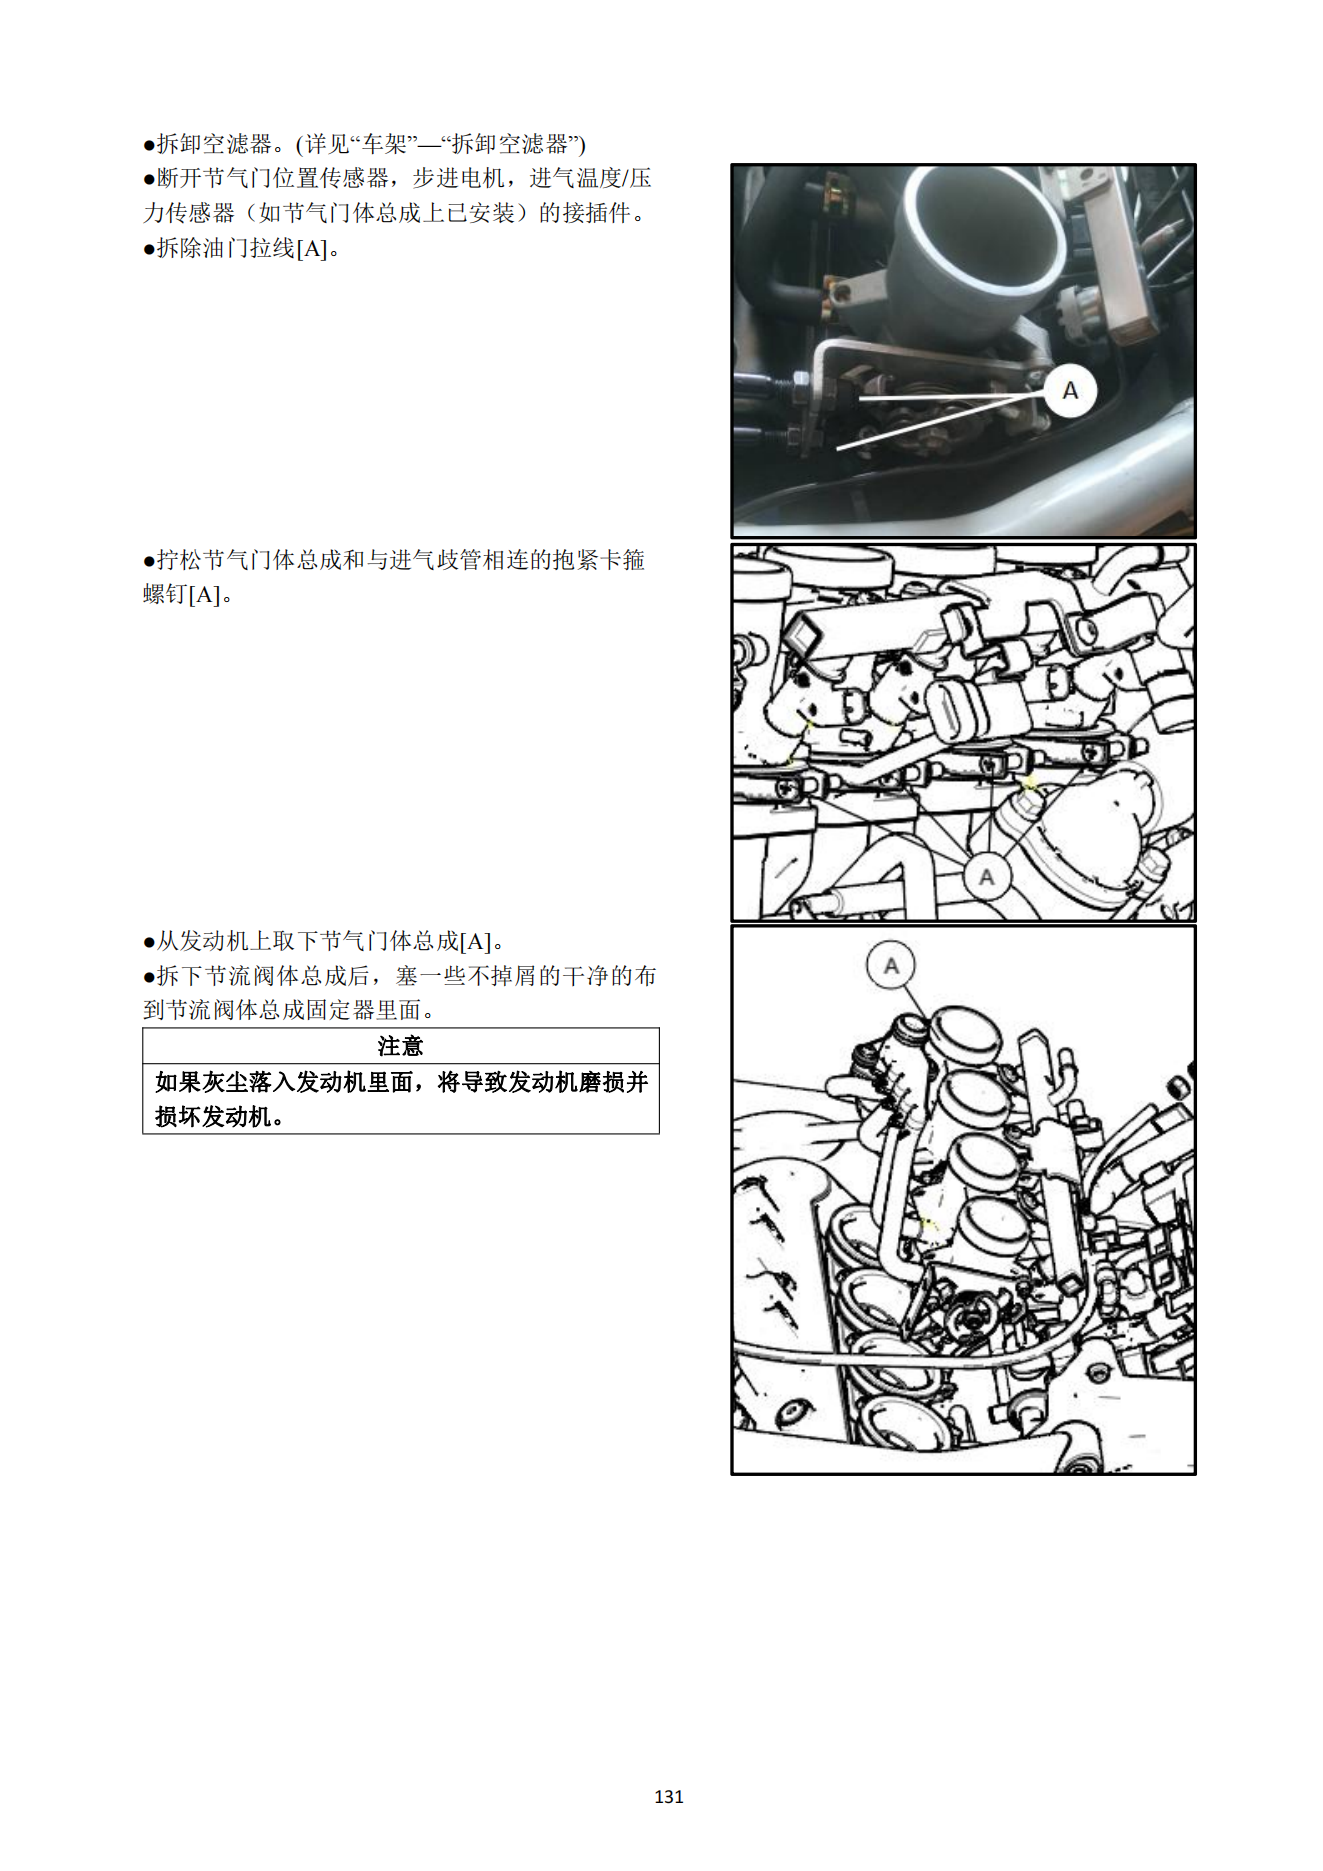 原版中文国4排放贝纳利黄龙600 BJ600GS-3维修手册通用追600插图4